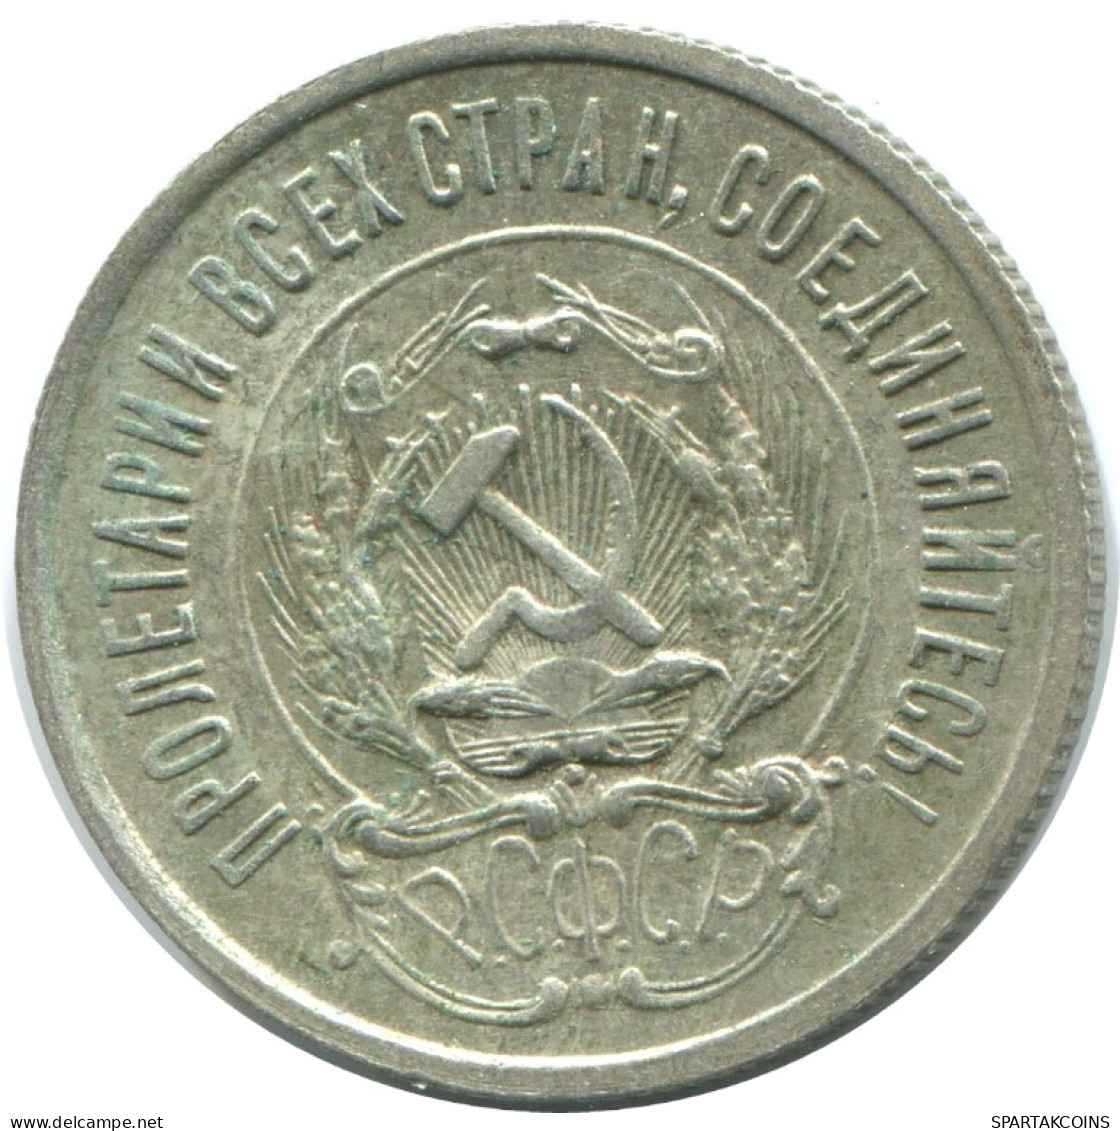 20 KOPEKS 1923 RUSSIA RSFSR SILVER Coin HIGH GRADE #AF538.4.U.A - Russland